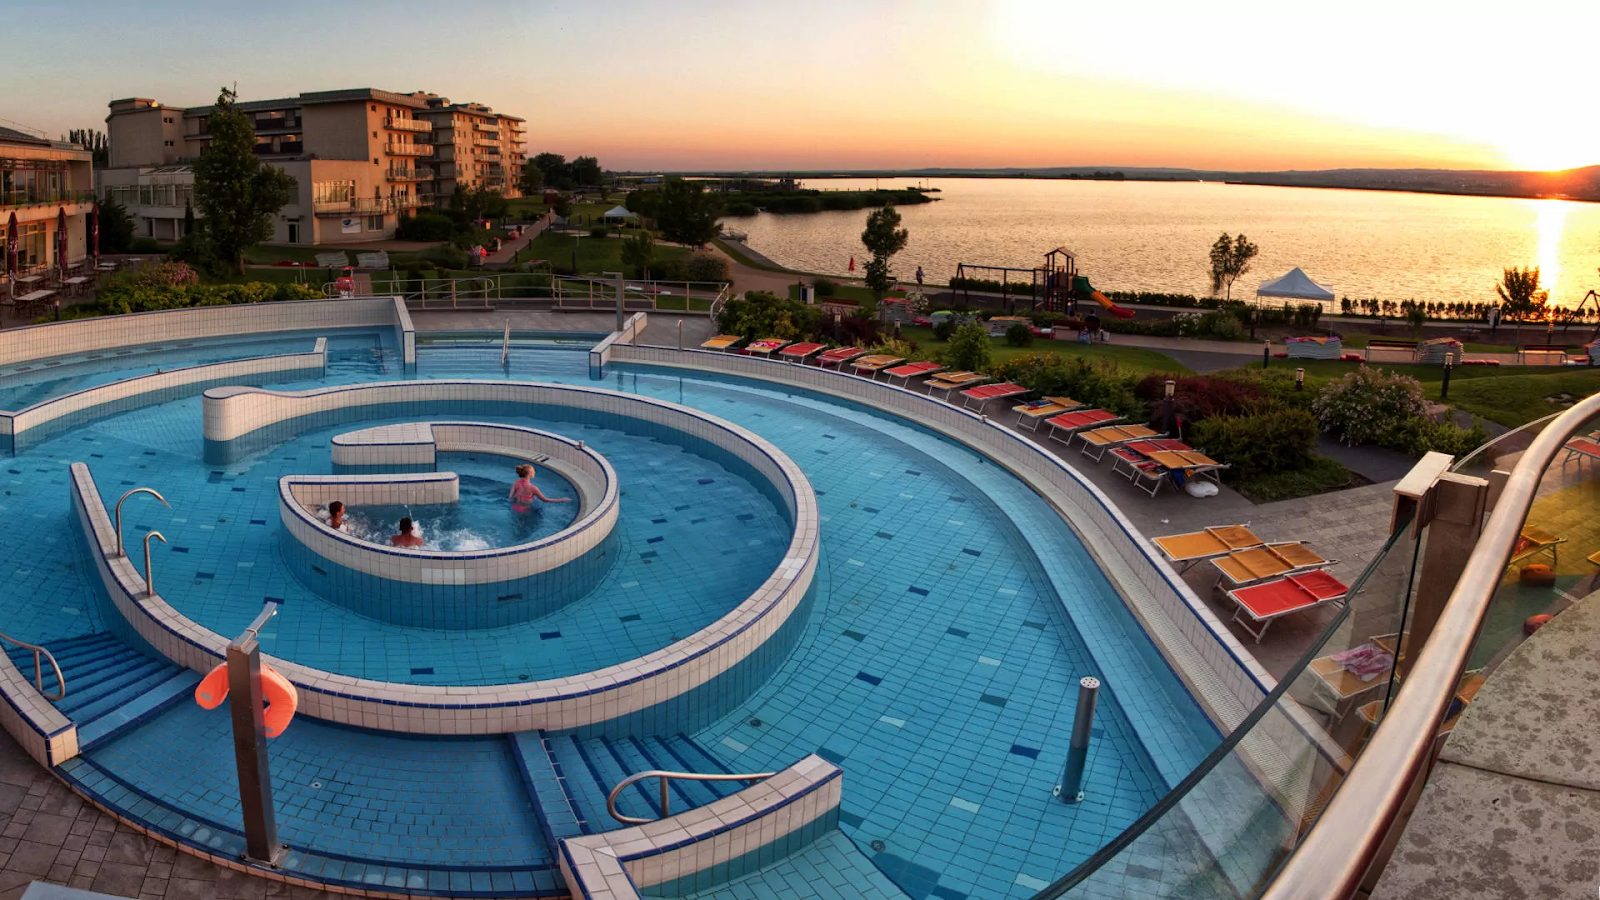 Téli wellness és ünnepi programok a tóparti Velence Resort & Spa-ban